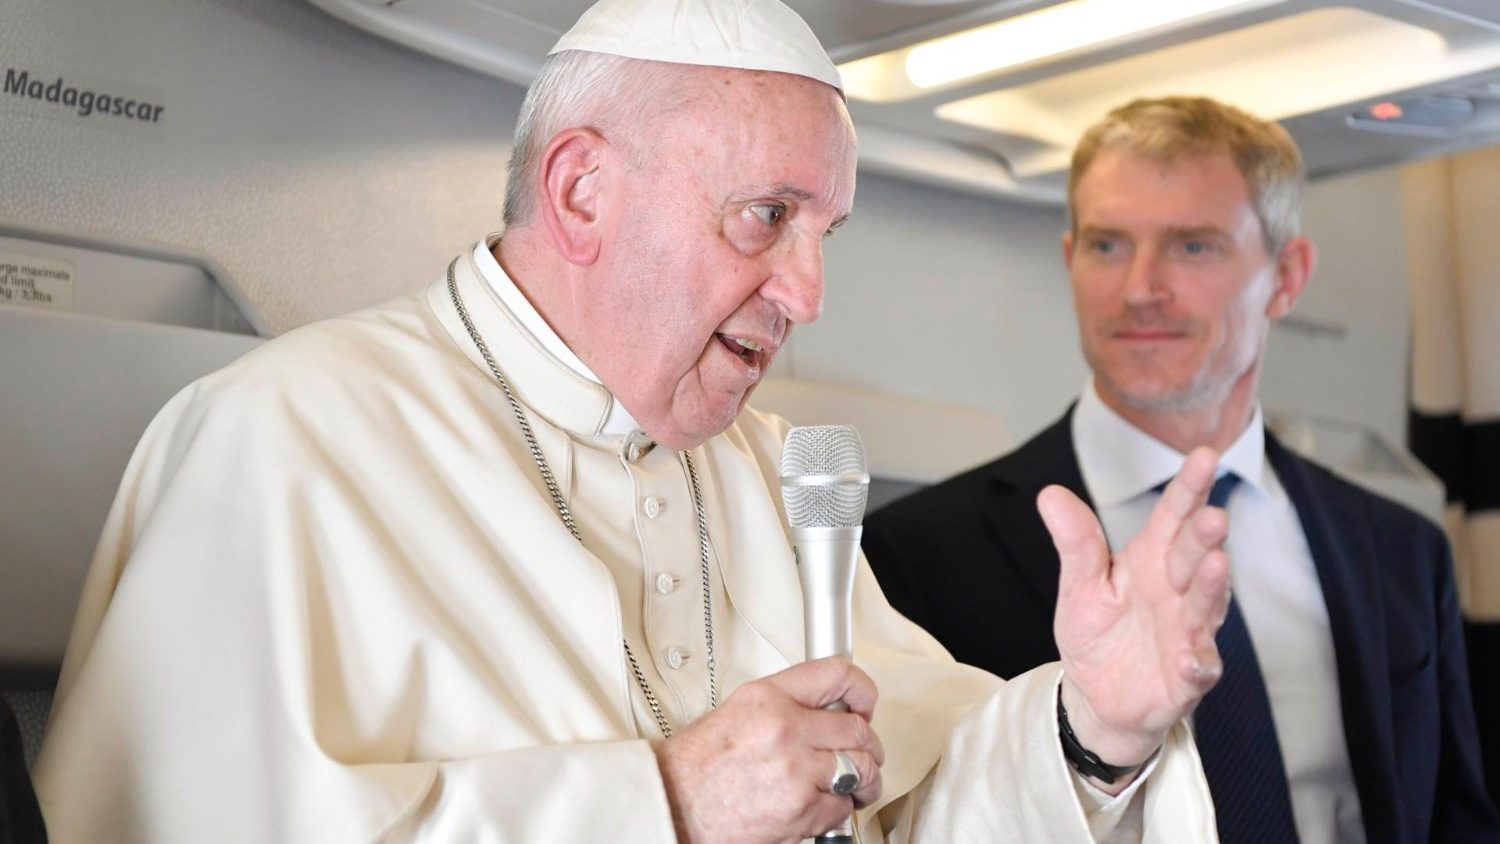 Conférence de Presse du pape François, dans son avion de retour de l'Afrique, le 10 septembre 2019 ("Je n'ai pas peur des schismes", dit le pape) Cq5dam.thumbnail.cropped.1500.844